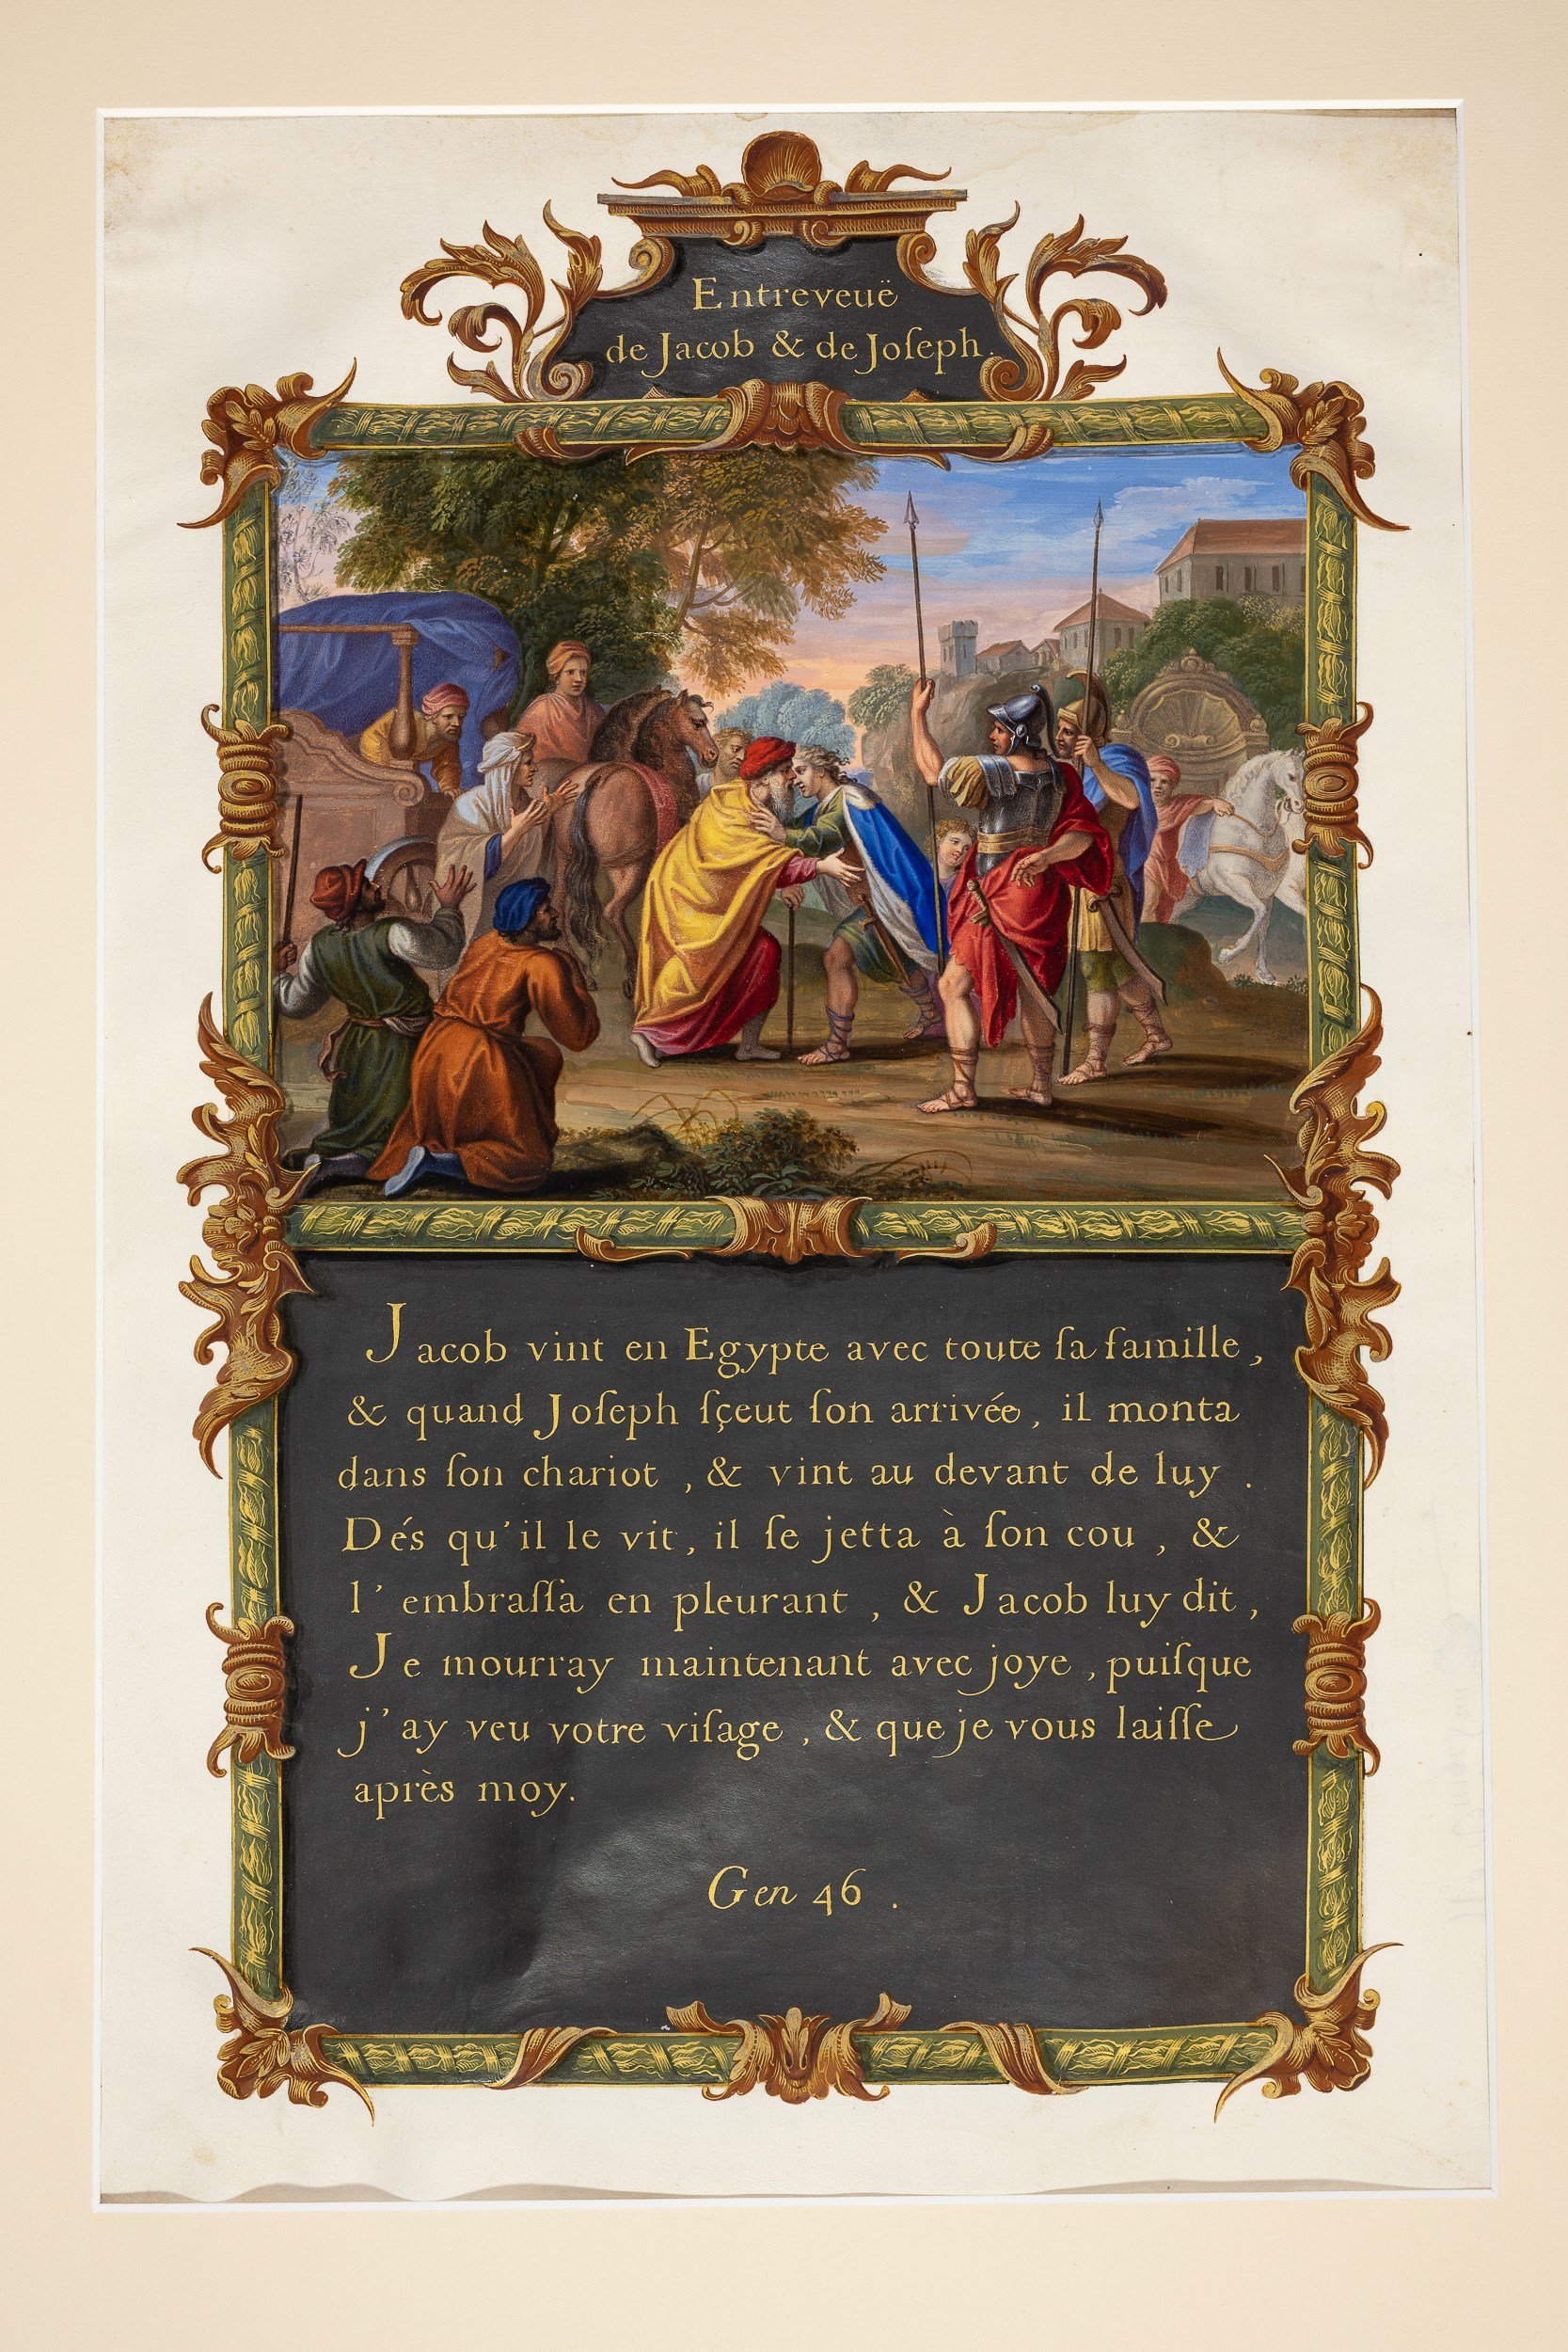 Joseph-in-Egypt-History-Illuminated-manuscript-painting-jean-joubert-sylvain-bonnet-anna-of-bavaria-baviere_18.jpg